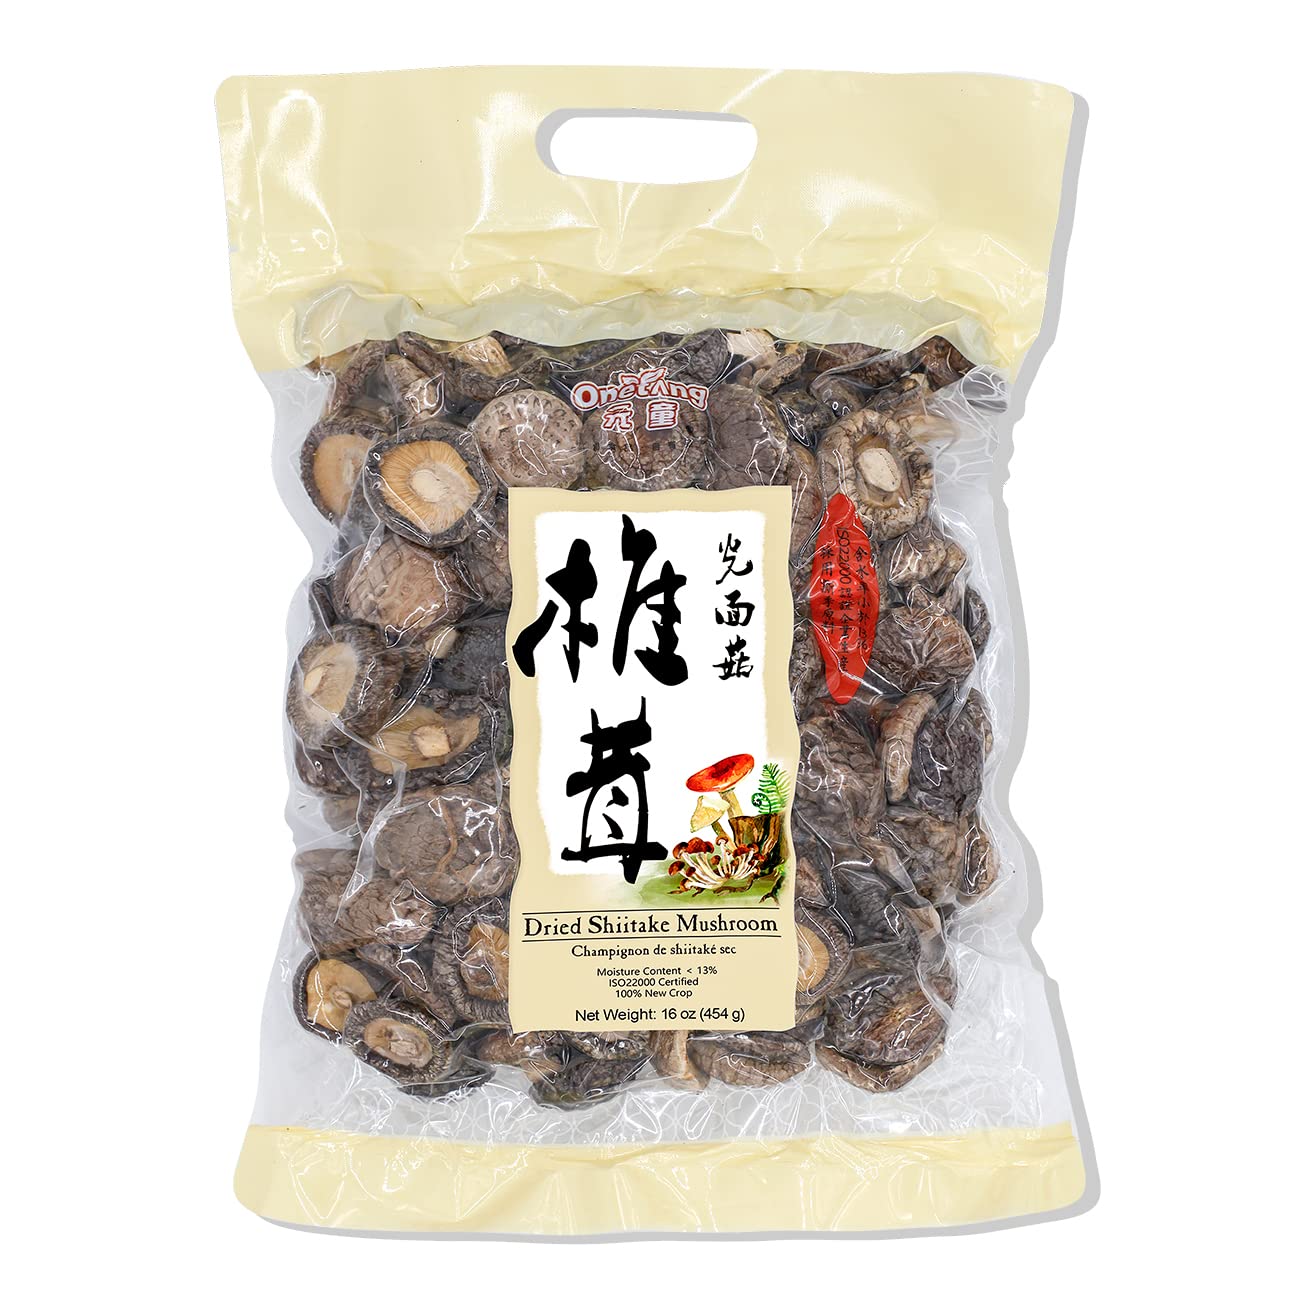 ONETANG Dried Shiitake Mushrooms